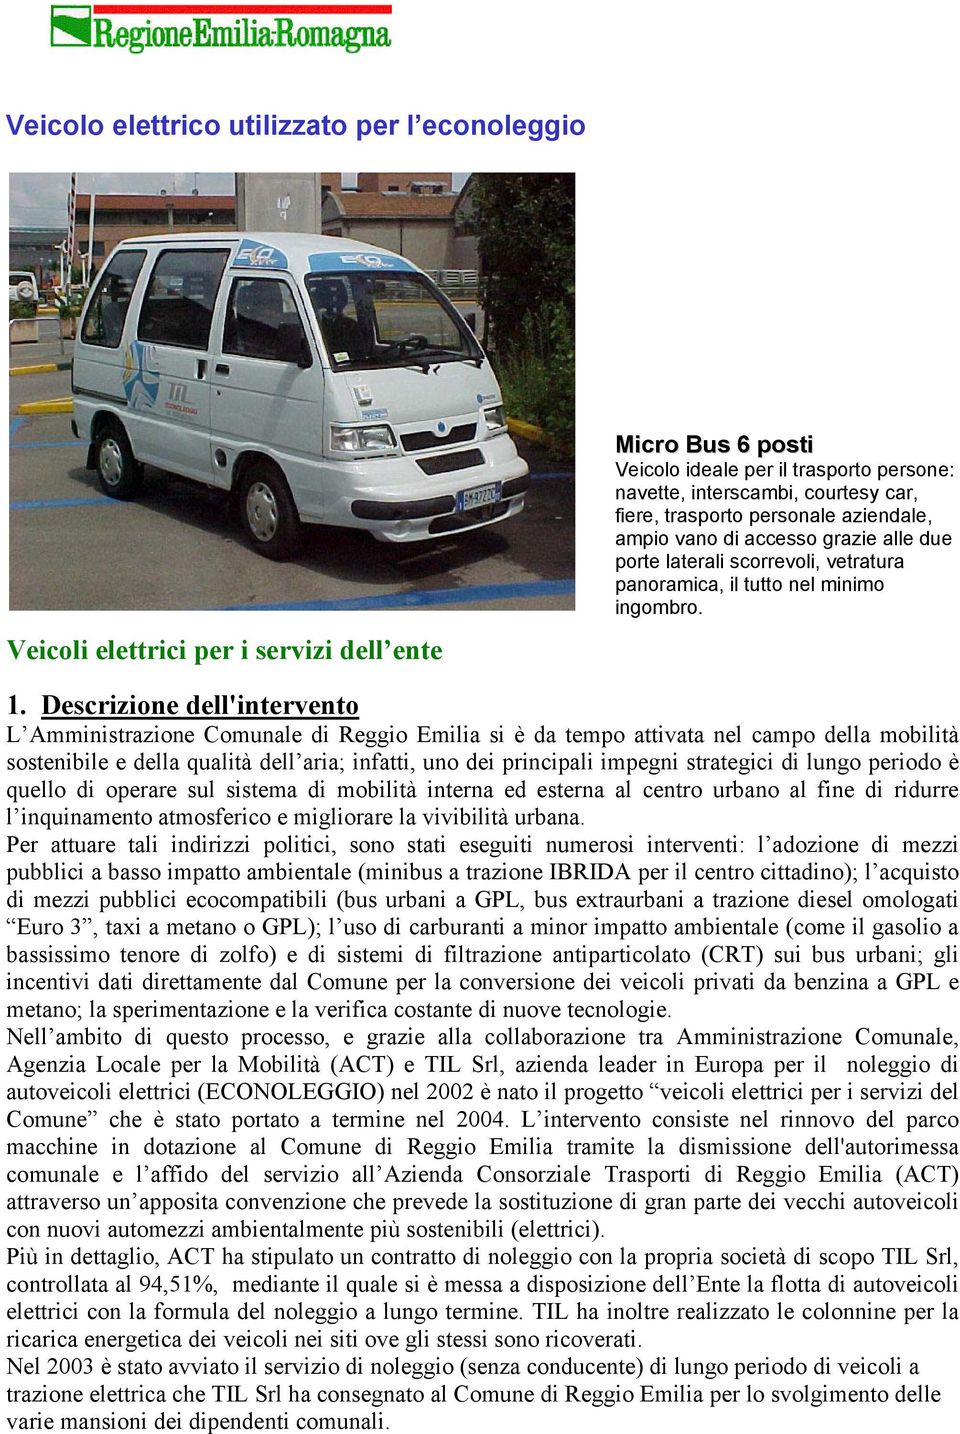 Descrizione dell'intervento L Amministrazione Comunale di Reggio Emilia si è da tempo attivata nel campo della mobilità sostenibile e della qualità dell aria; infatti, uno dei principali impegni